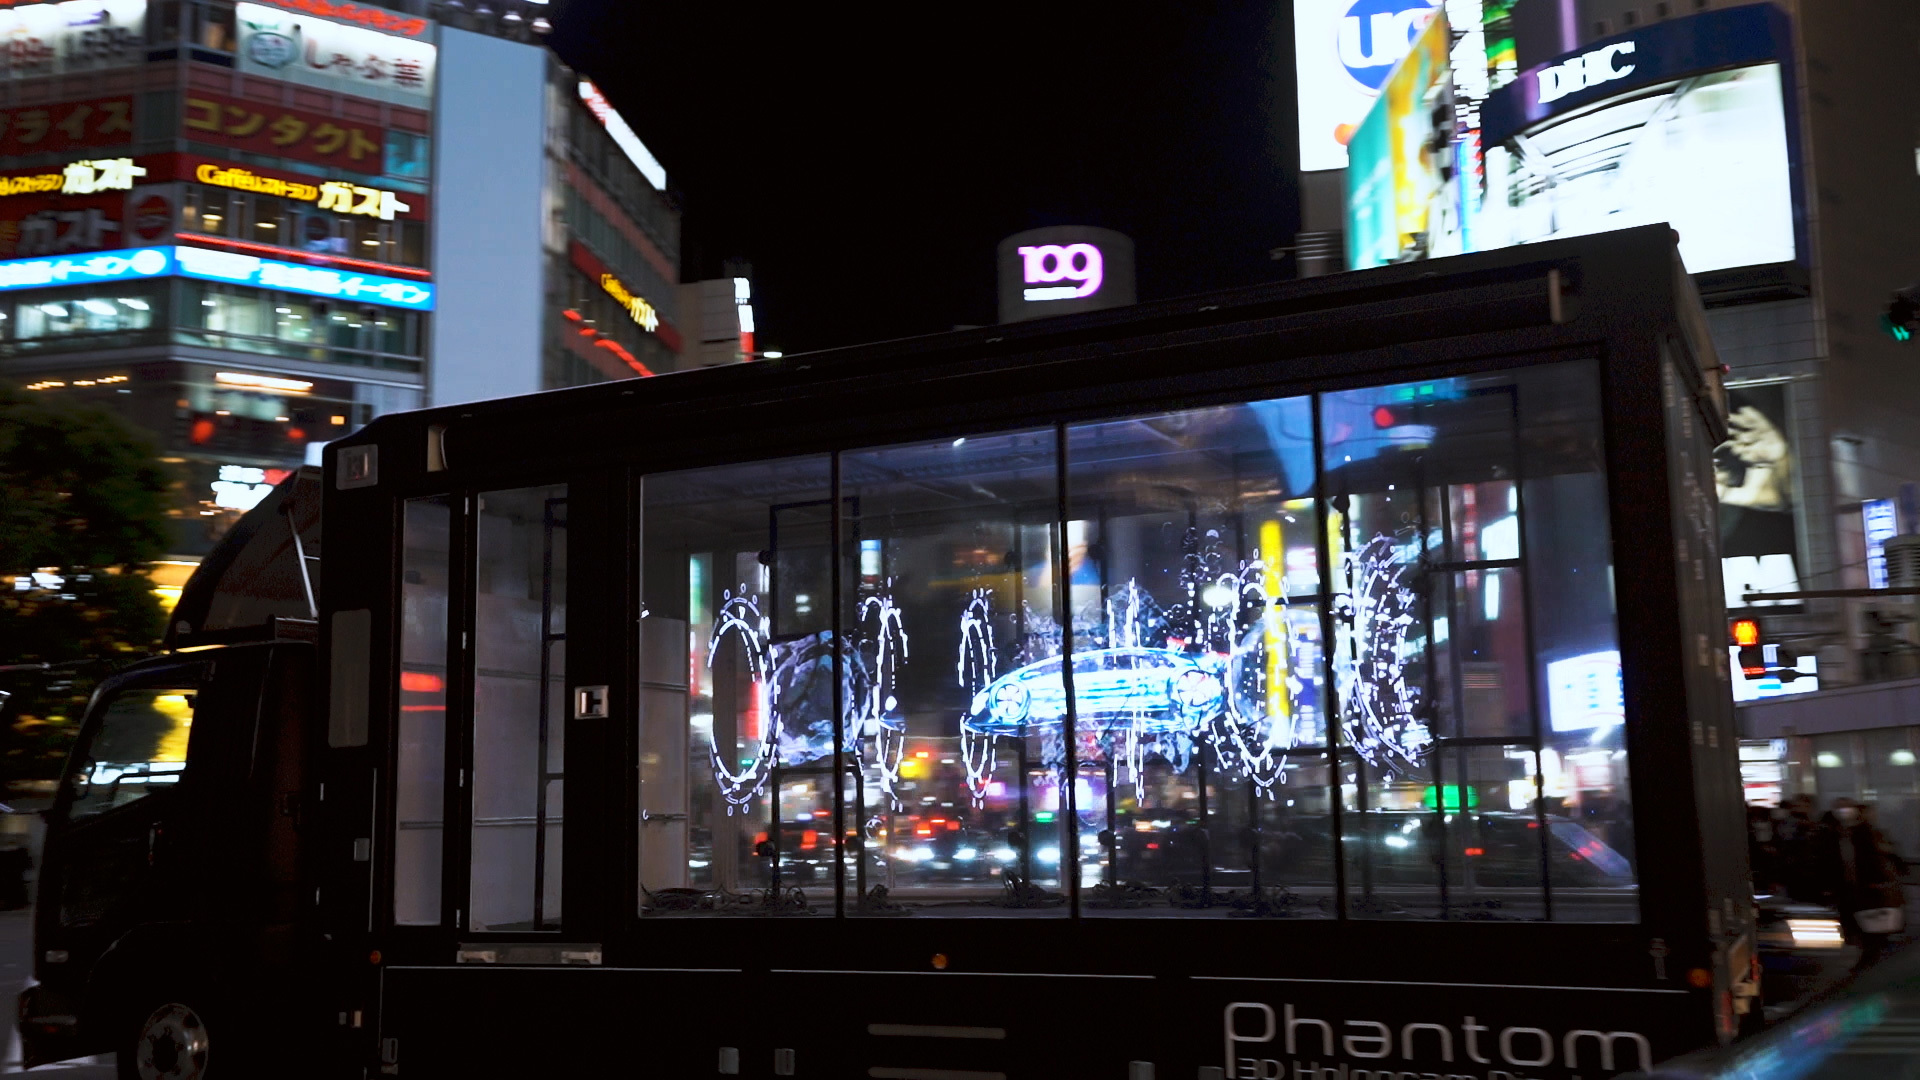 次世代アドトラック 3d Phantom モビリティアートトラック がデジタルサイネージアワード21 優秀賞を受賞 株式会社life Is Styleのプレスリリース